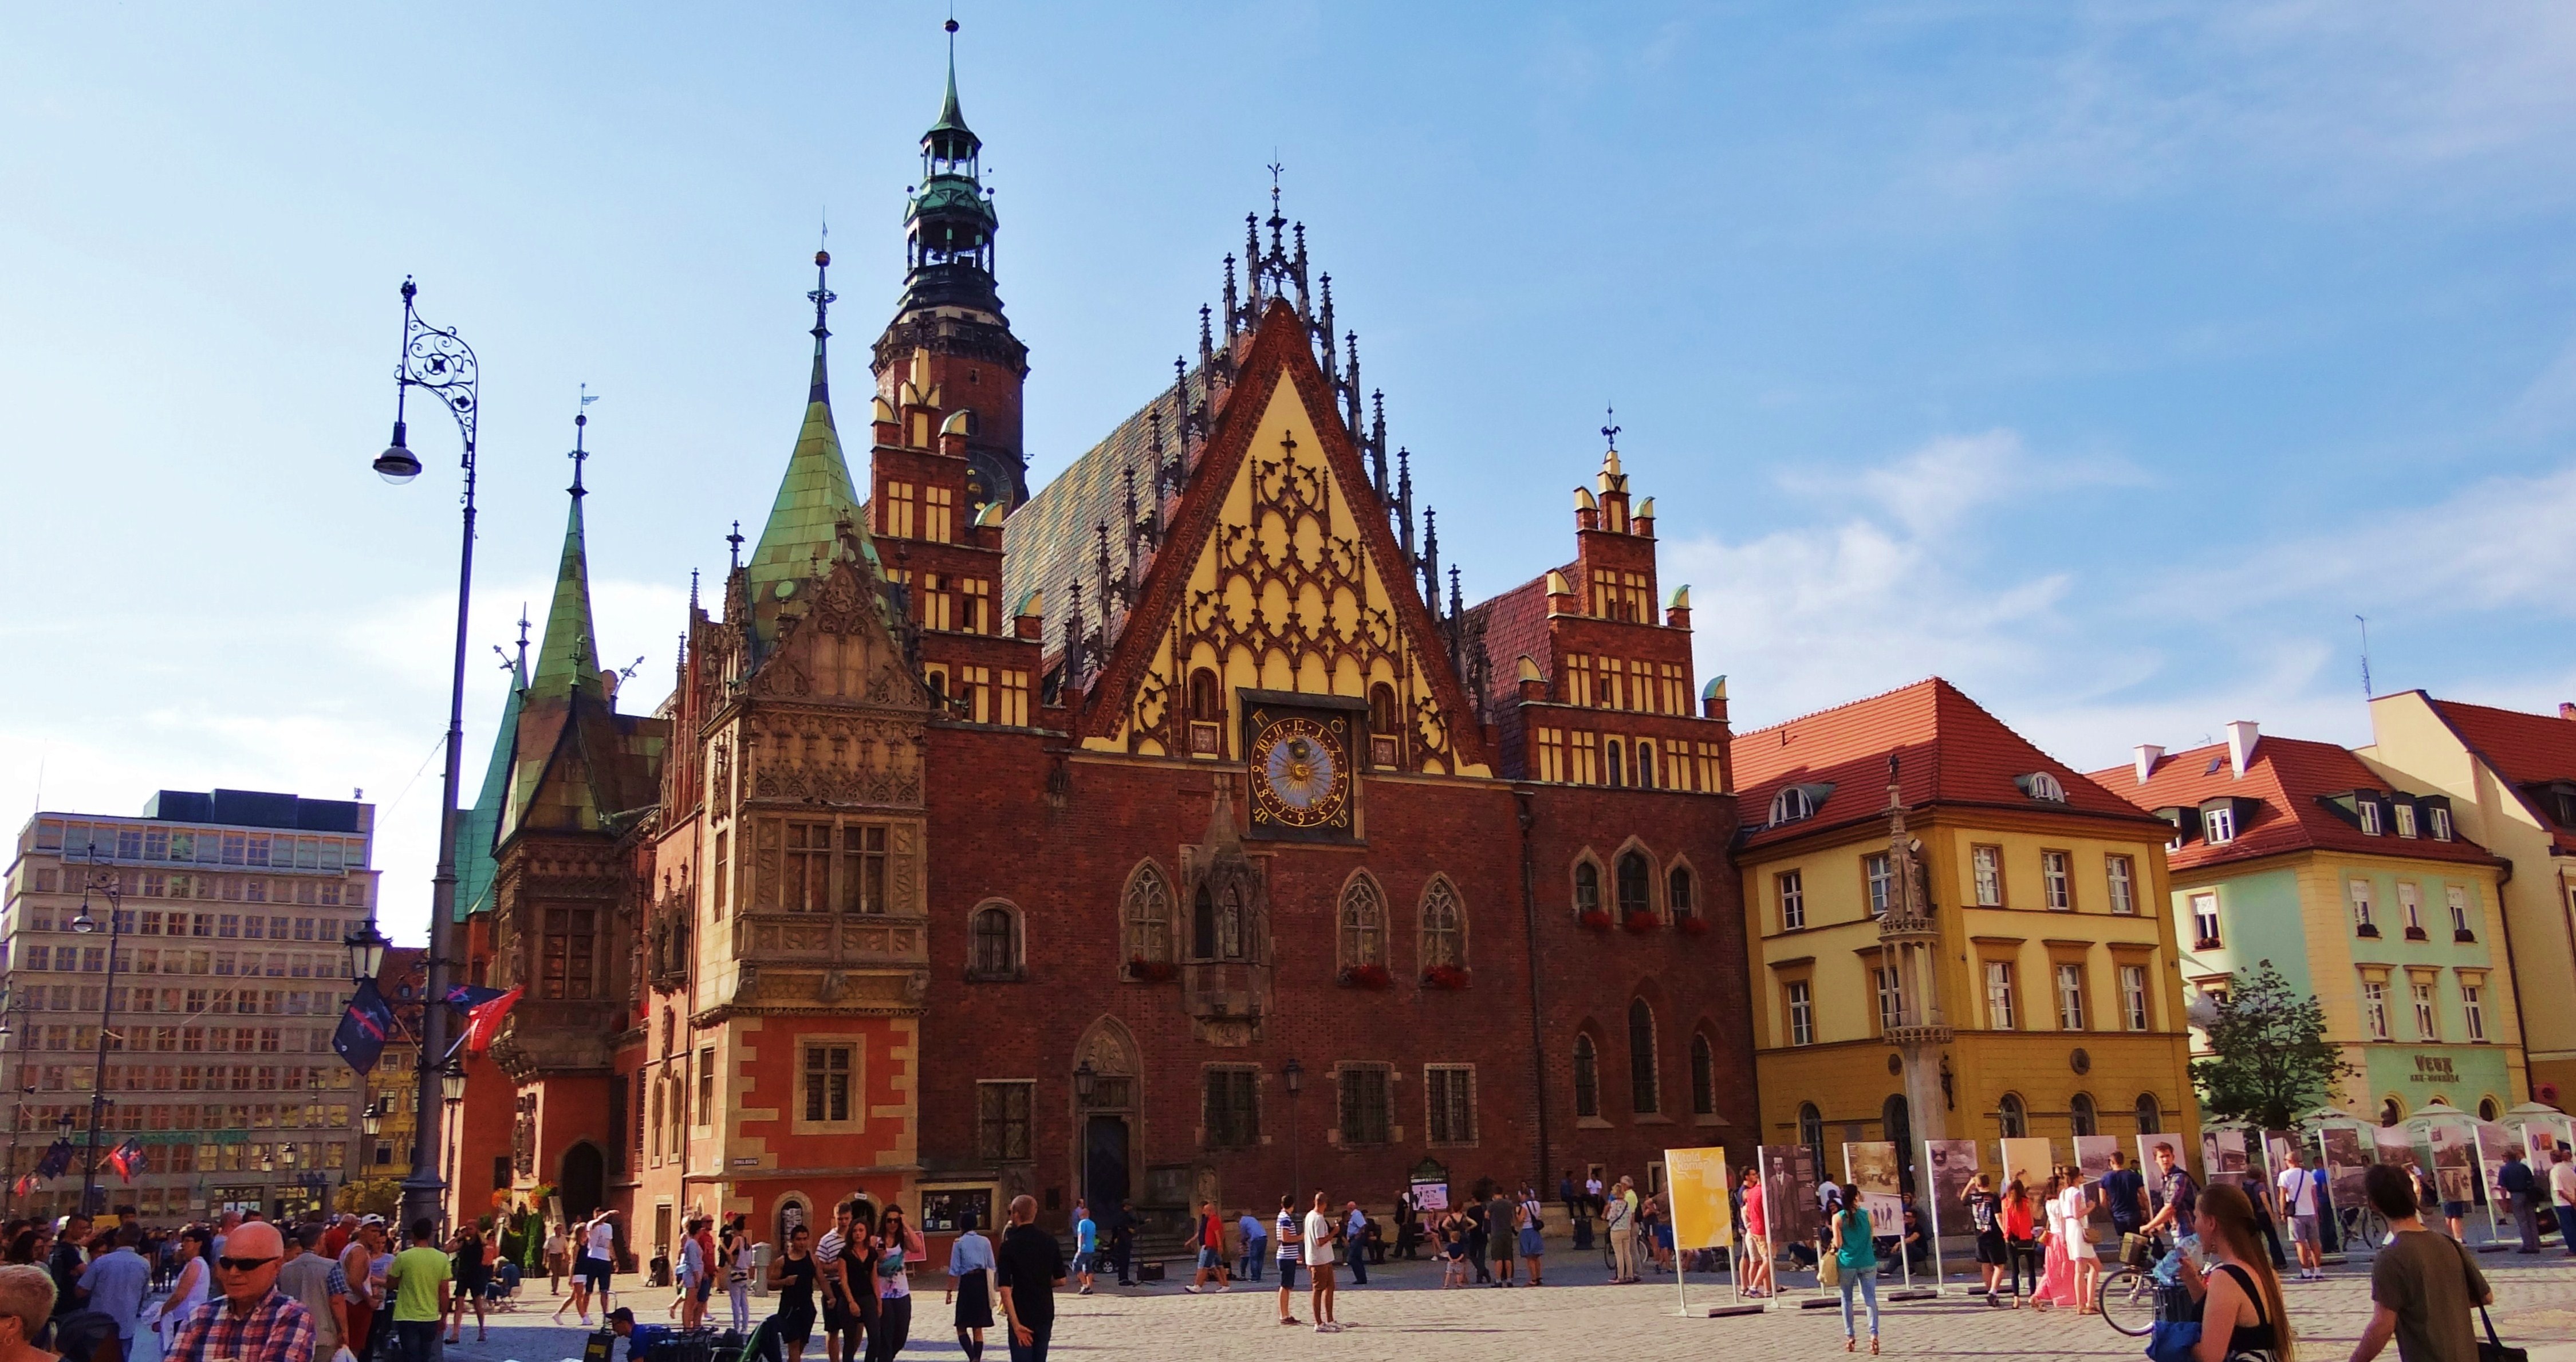 Foto: Stary Ratusz we Wrocławiu - Wrocław (Lower Silesian Voivodeship), Polonia